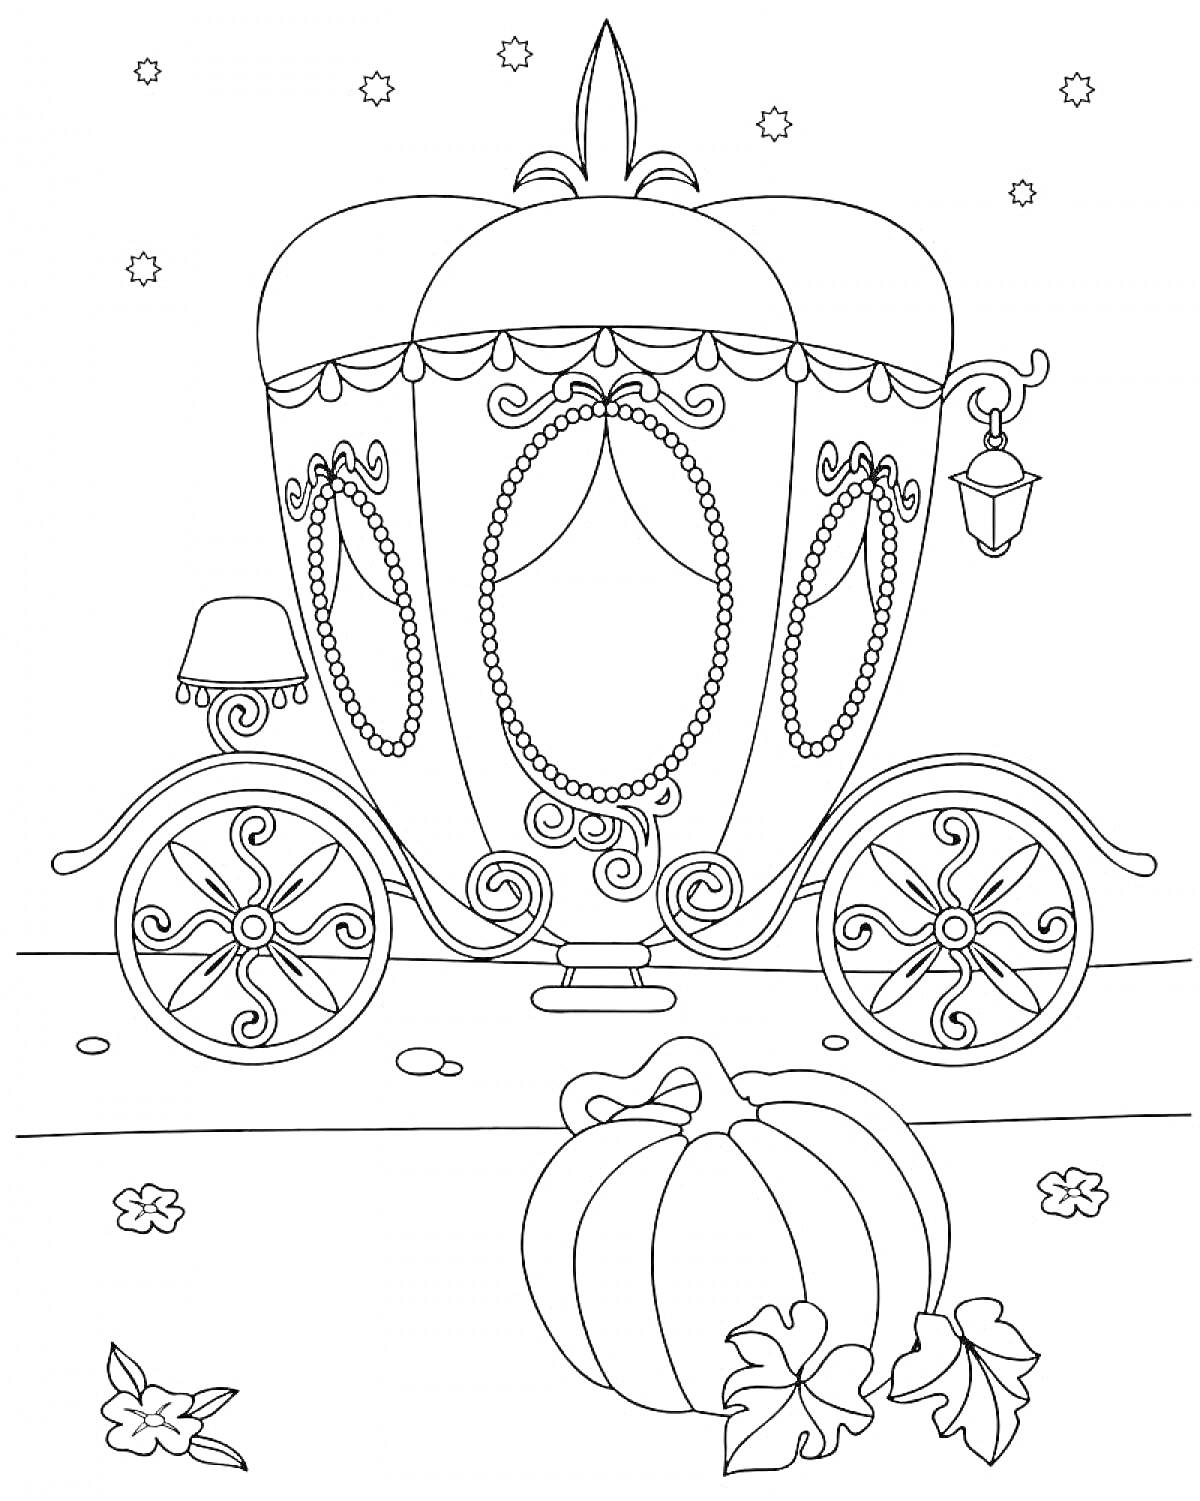 Королевская карета, украшенная завитками и лампой, с большим колесом, окруженная падающими звёздами и осенними листьями, со спелой тыквой на переднем плане.